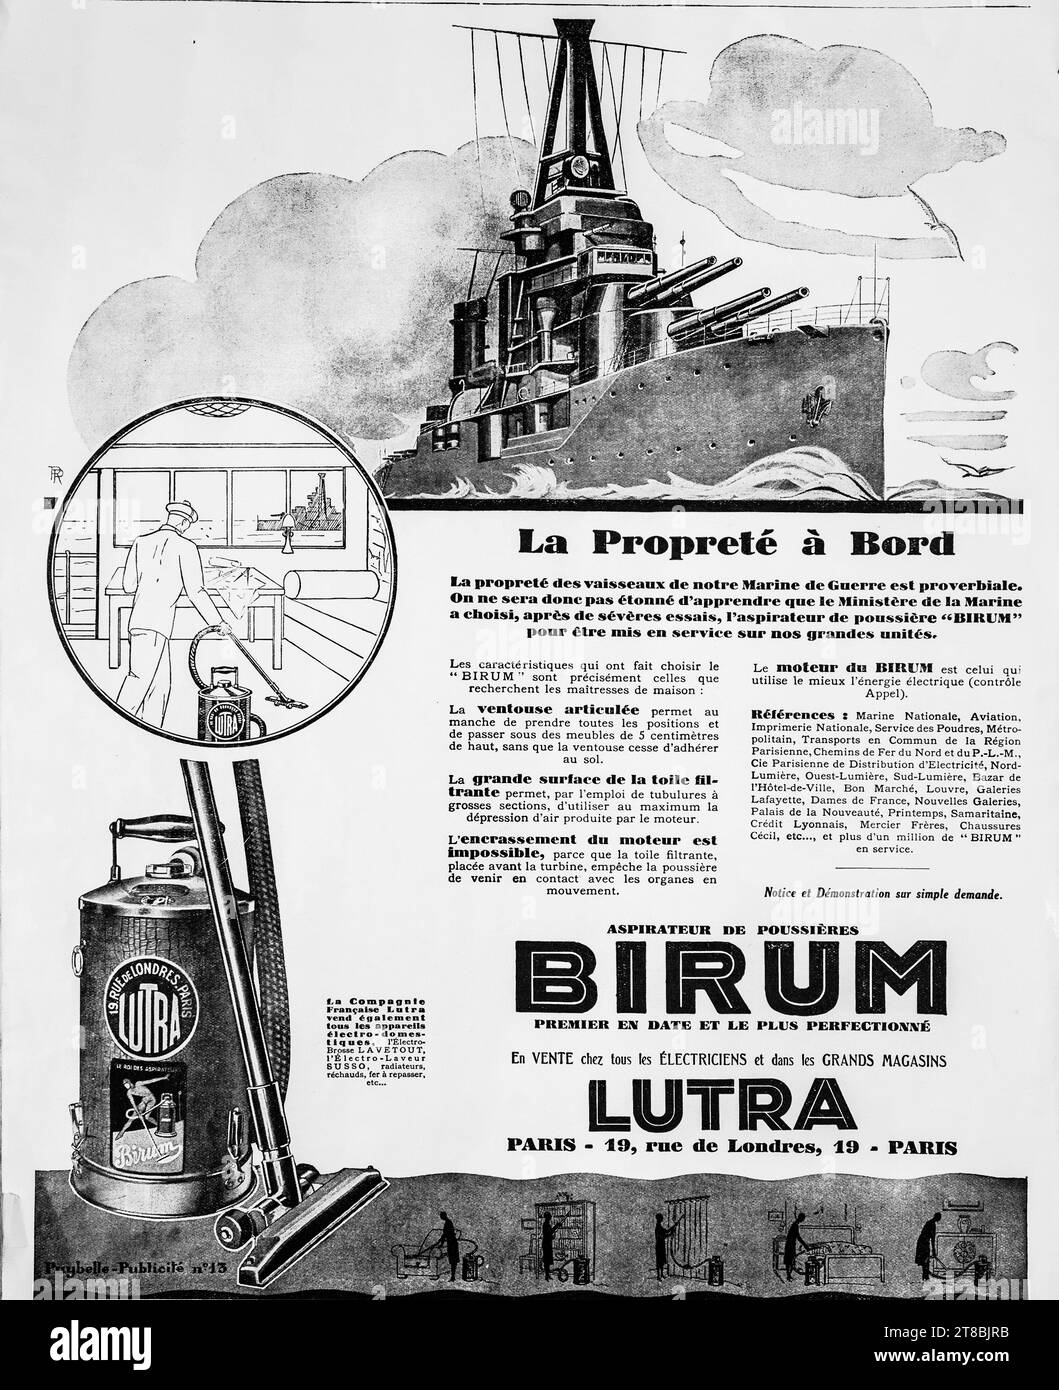 Eine Vintage-Werbung in französischer Sprache aus dem Jahr 1927 für Birum Staubsauger. In der Werbung wird behauptet, dass die französische Marine diesen Staubsauger für ihre größeren Einheiten verwendet hat. Stockfoto